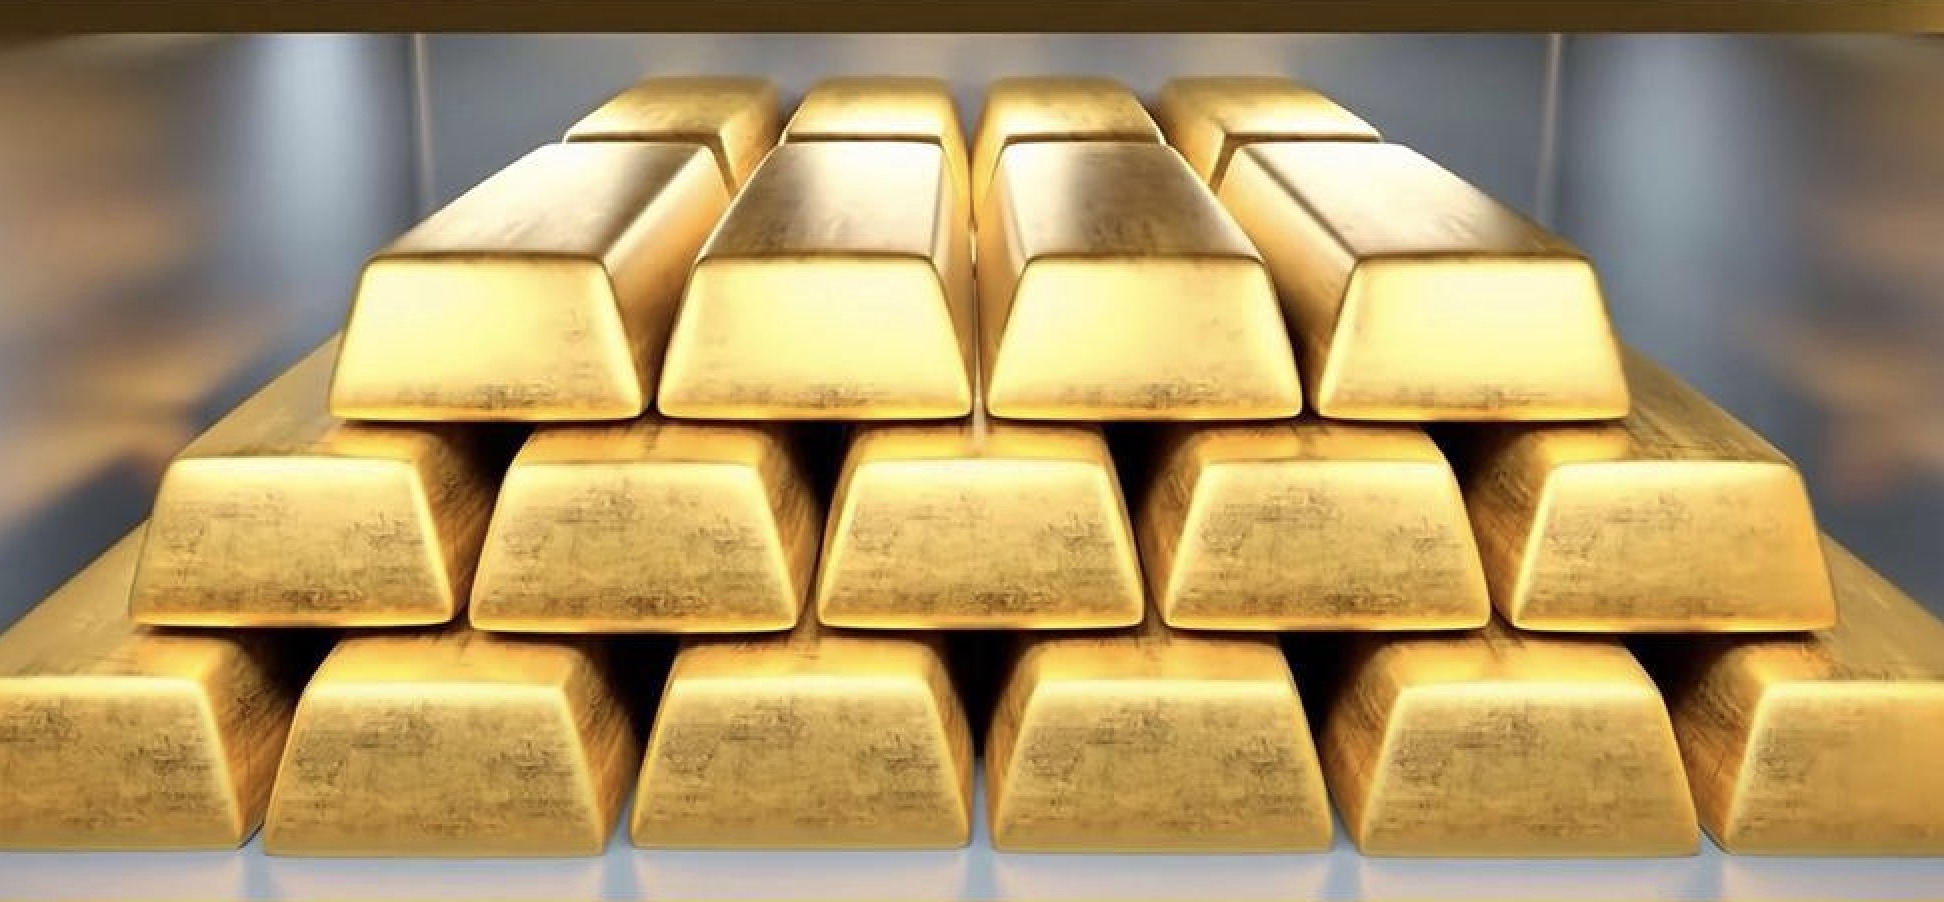 คำเตือนการซื้อขายทองคำ: ราคากำลังจะบ้า! ข่าวเชิงบวกสำคัญสองข่าวกระตุ้นให้เกิดภาวะกระทิง และราคาทองคำก็ทำสถิติสูงสุดใหม่